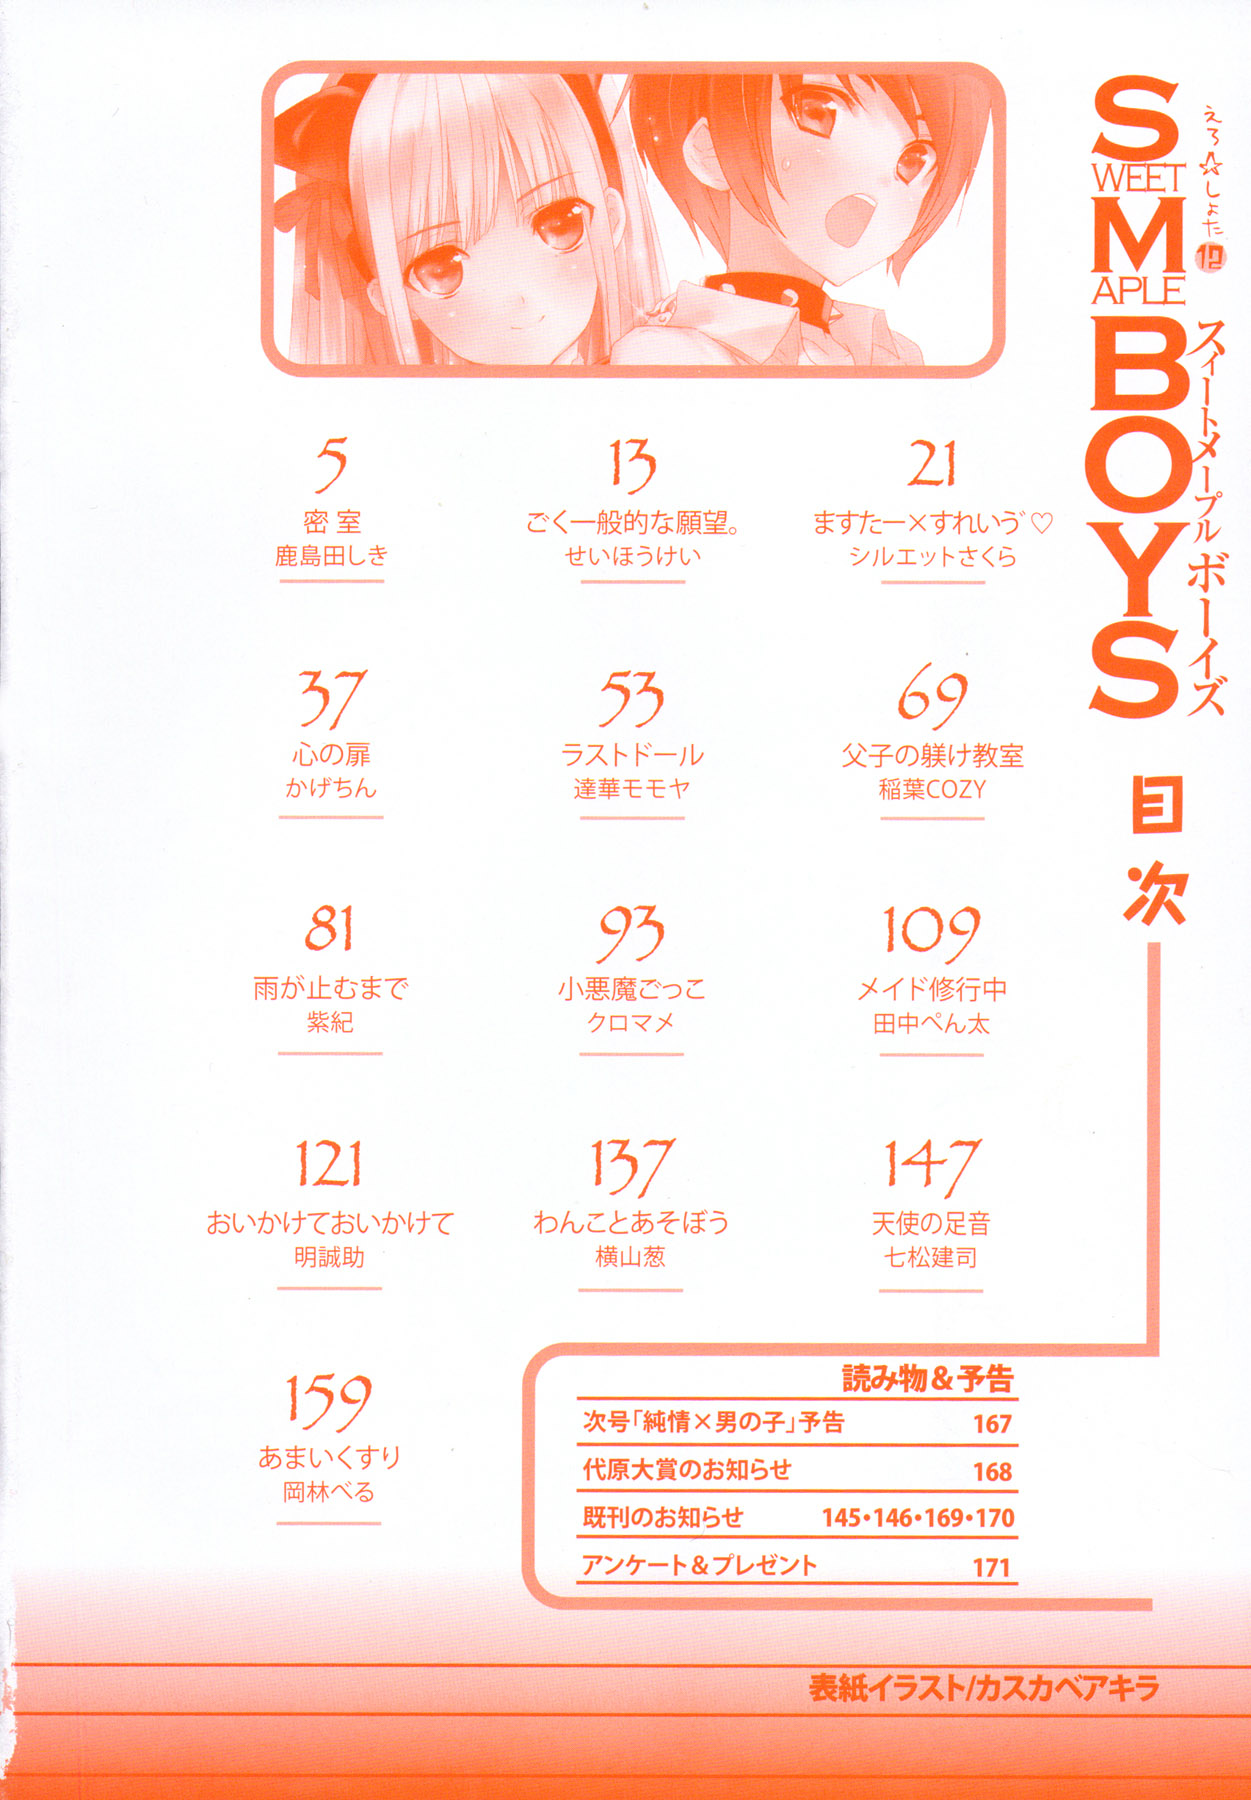 [Anthology] Ero Shota 12 - Sweet Maple Boys page 3 full